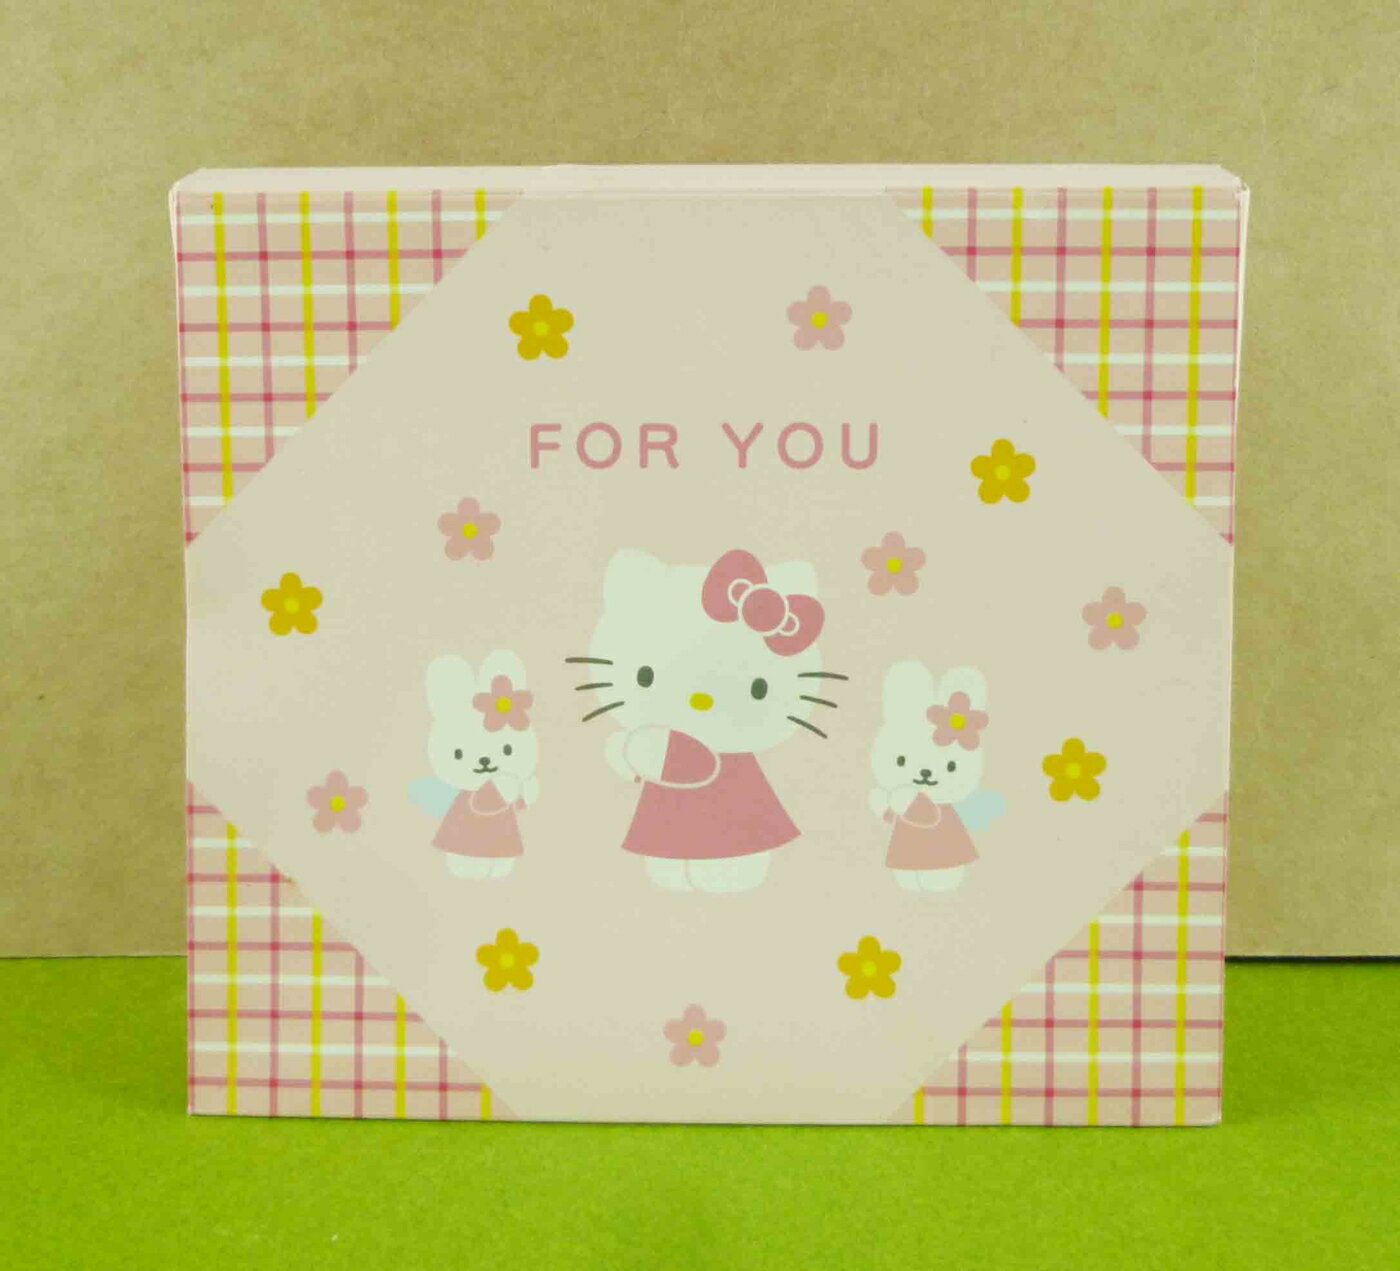 【震撼精品百貨】Hello Kitty 凱蒂貓 立體卡片-粉小兔 震撼日式精品百貨